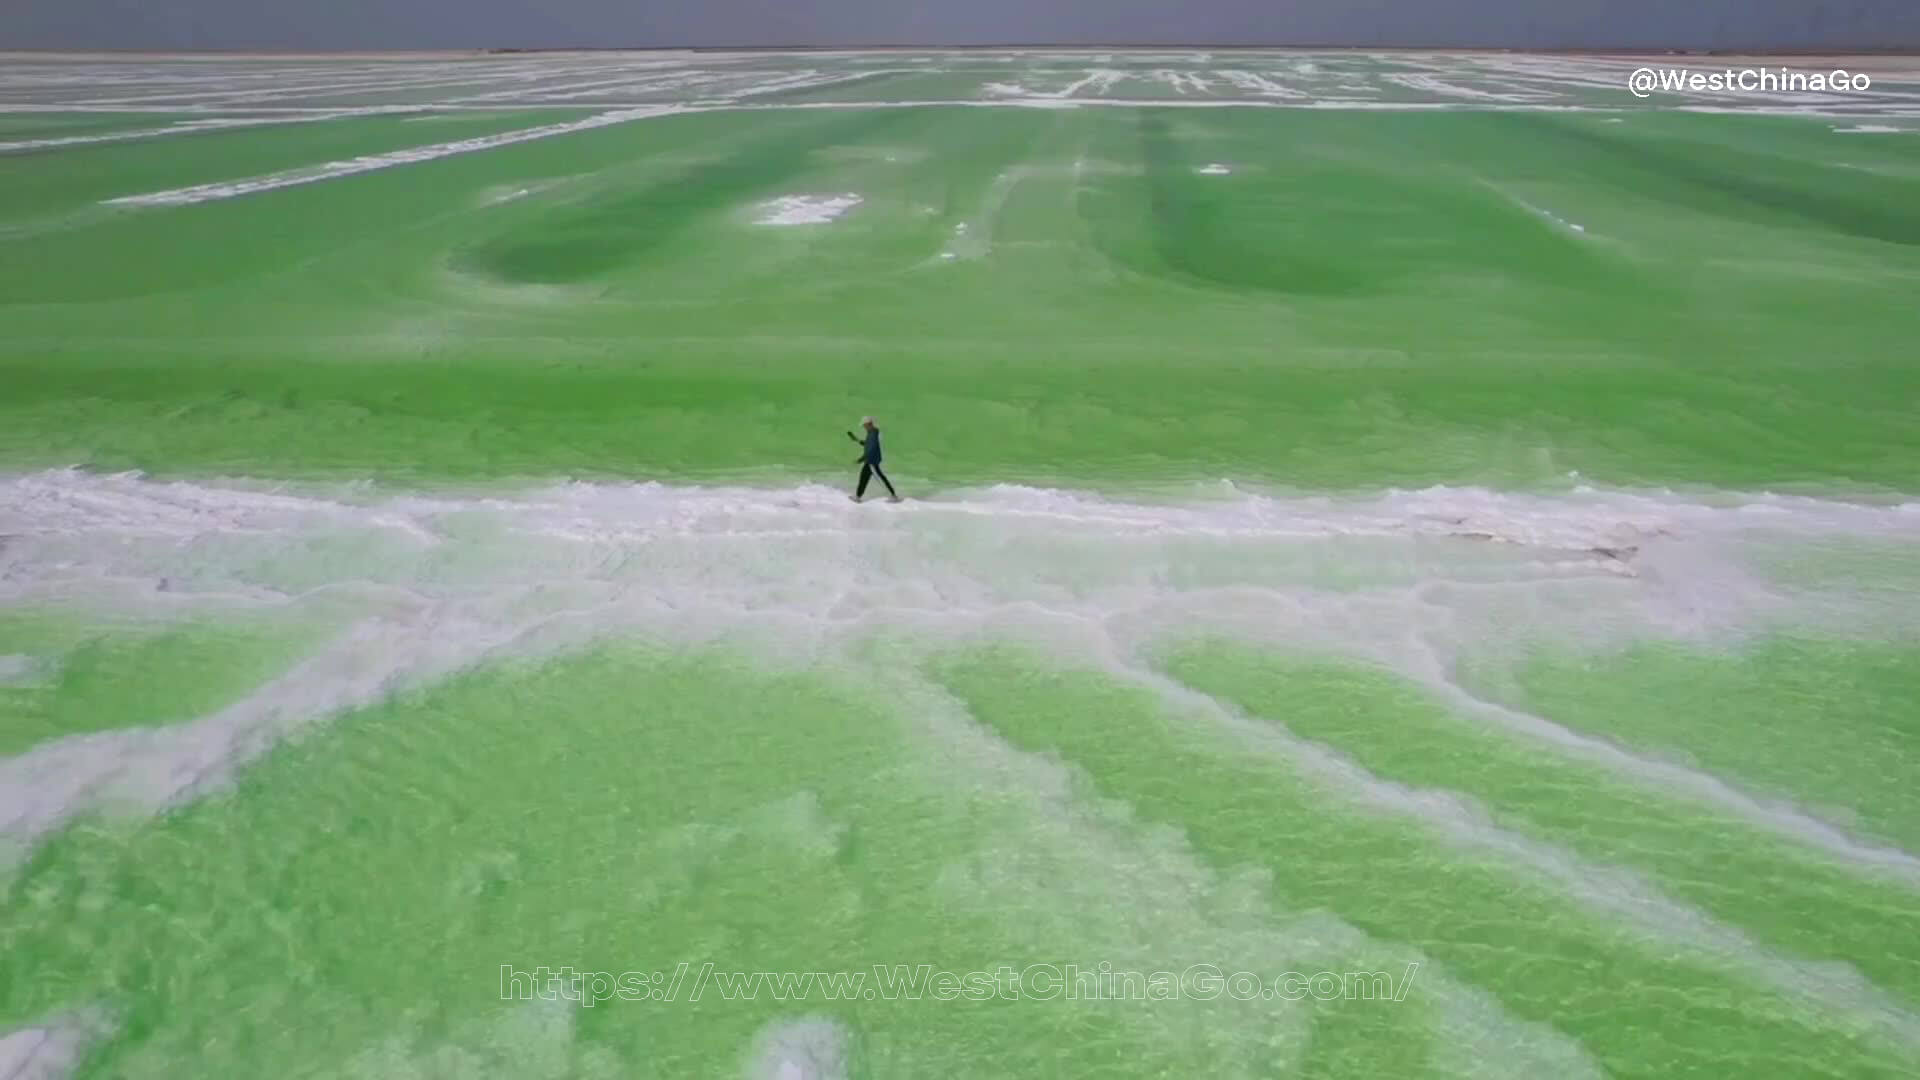 Qinghai Chaerhan Salt Lake